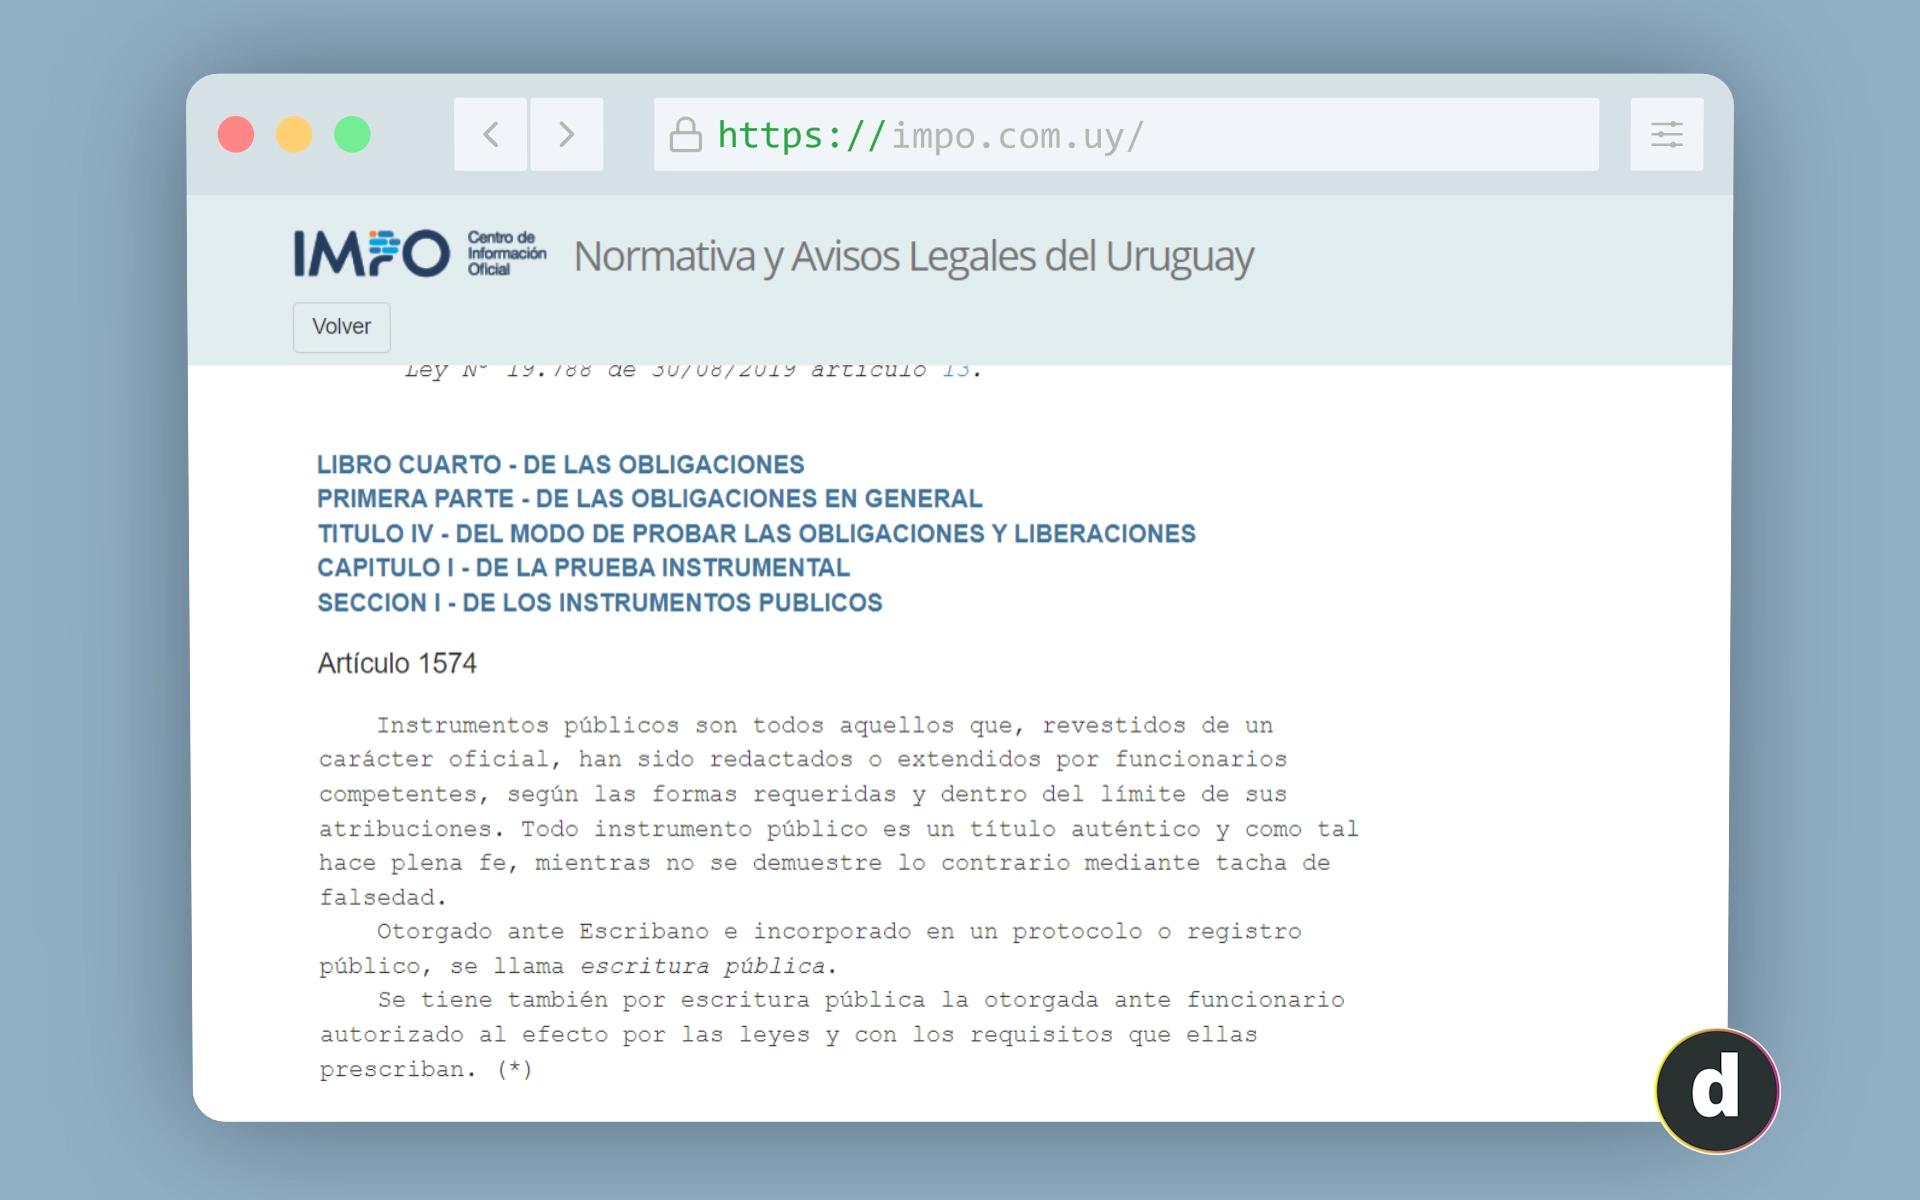 Artículo 1574 del Código civil uruguayo. 